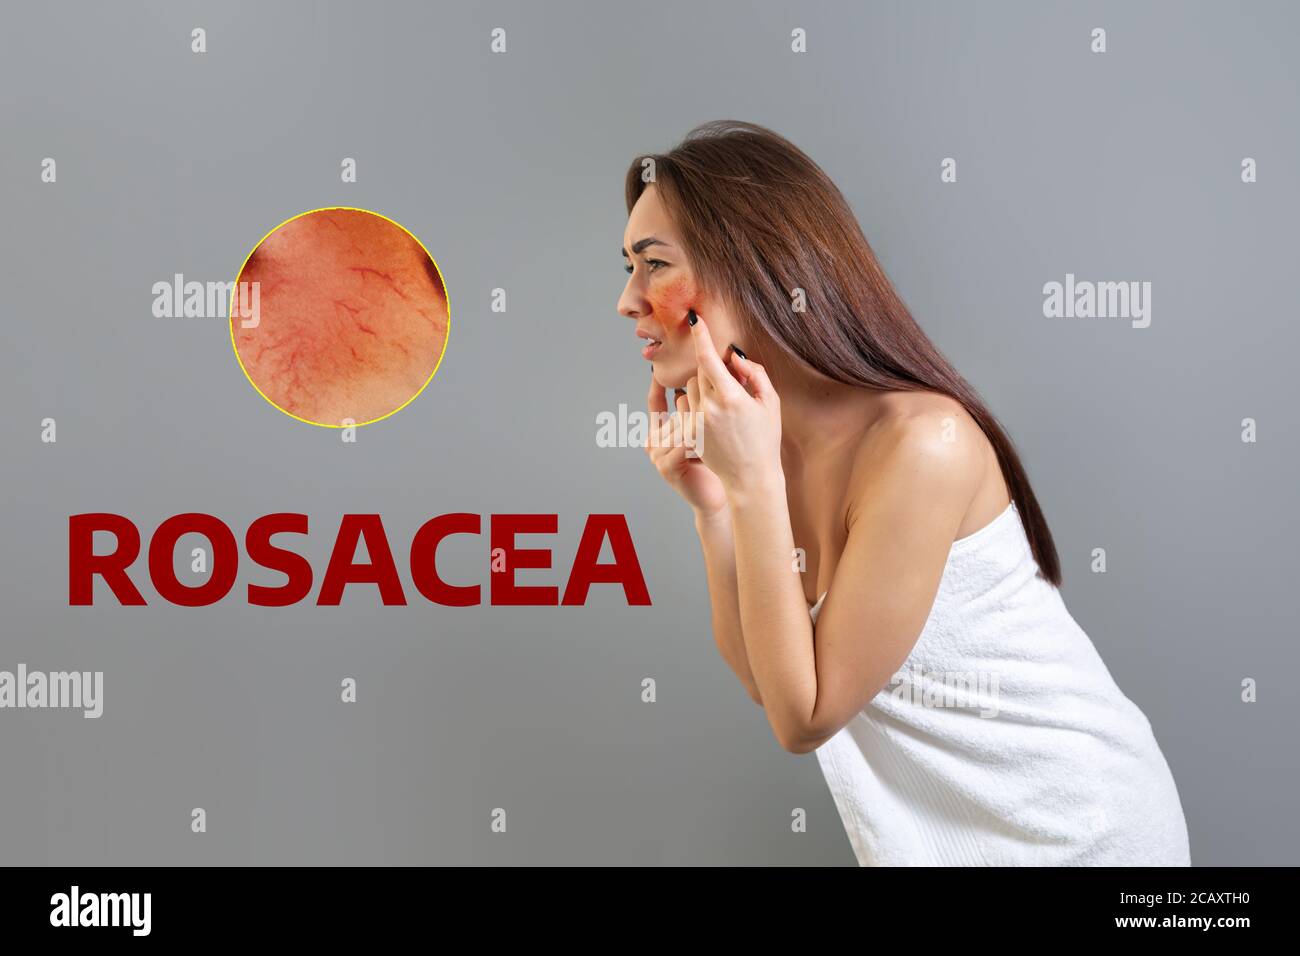 Das Konzept der Rosacea. Eine junge kaukasische Frau stößt ihre rosazea-rote Wange in Frustration. Speicherplatz kopieren. Zoomkreis zeigt Hautprobleme an. Isoliert auf w Stockfoto